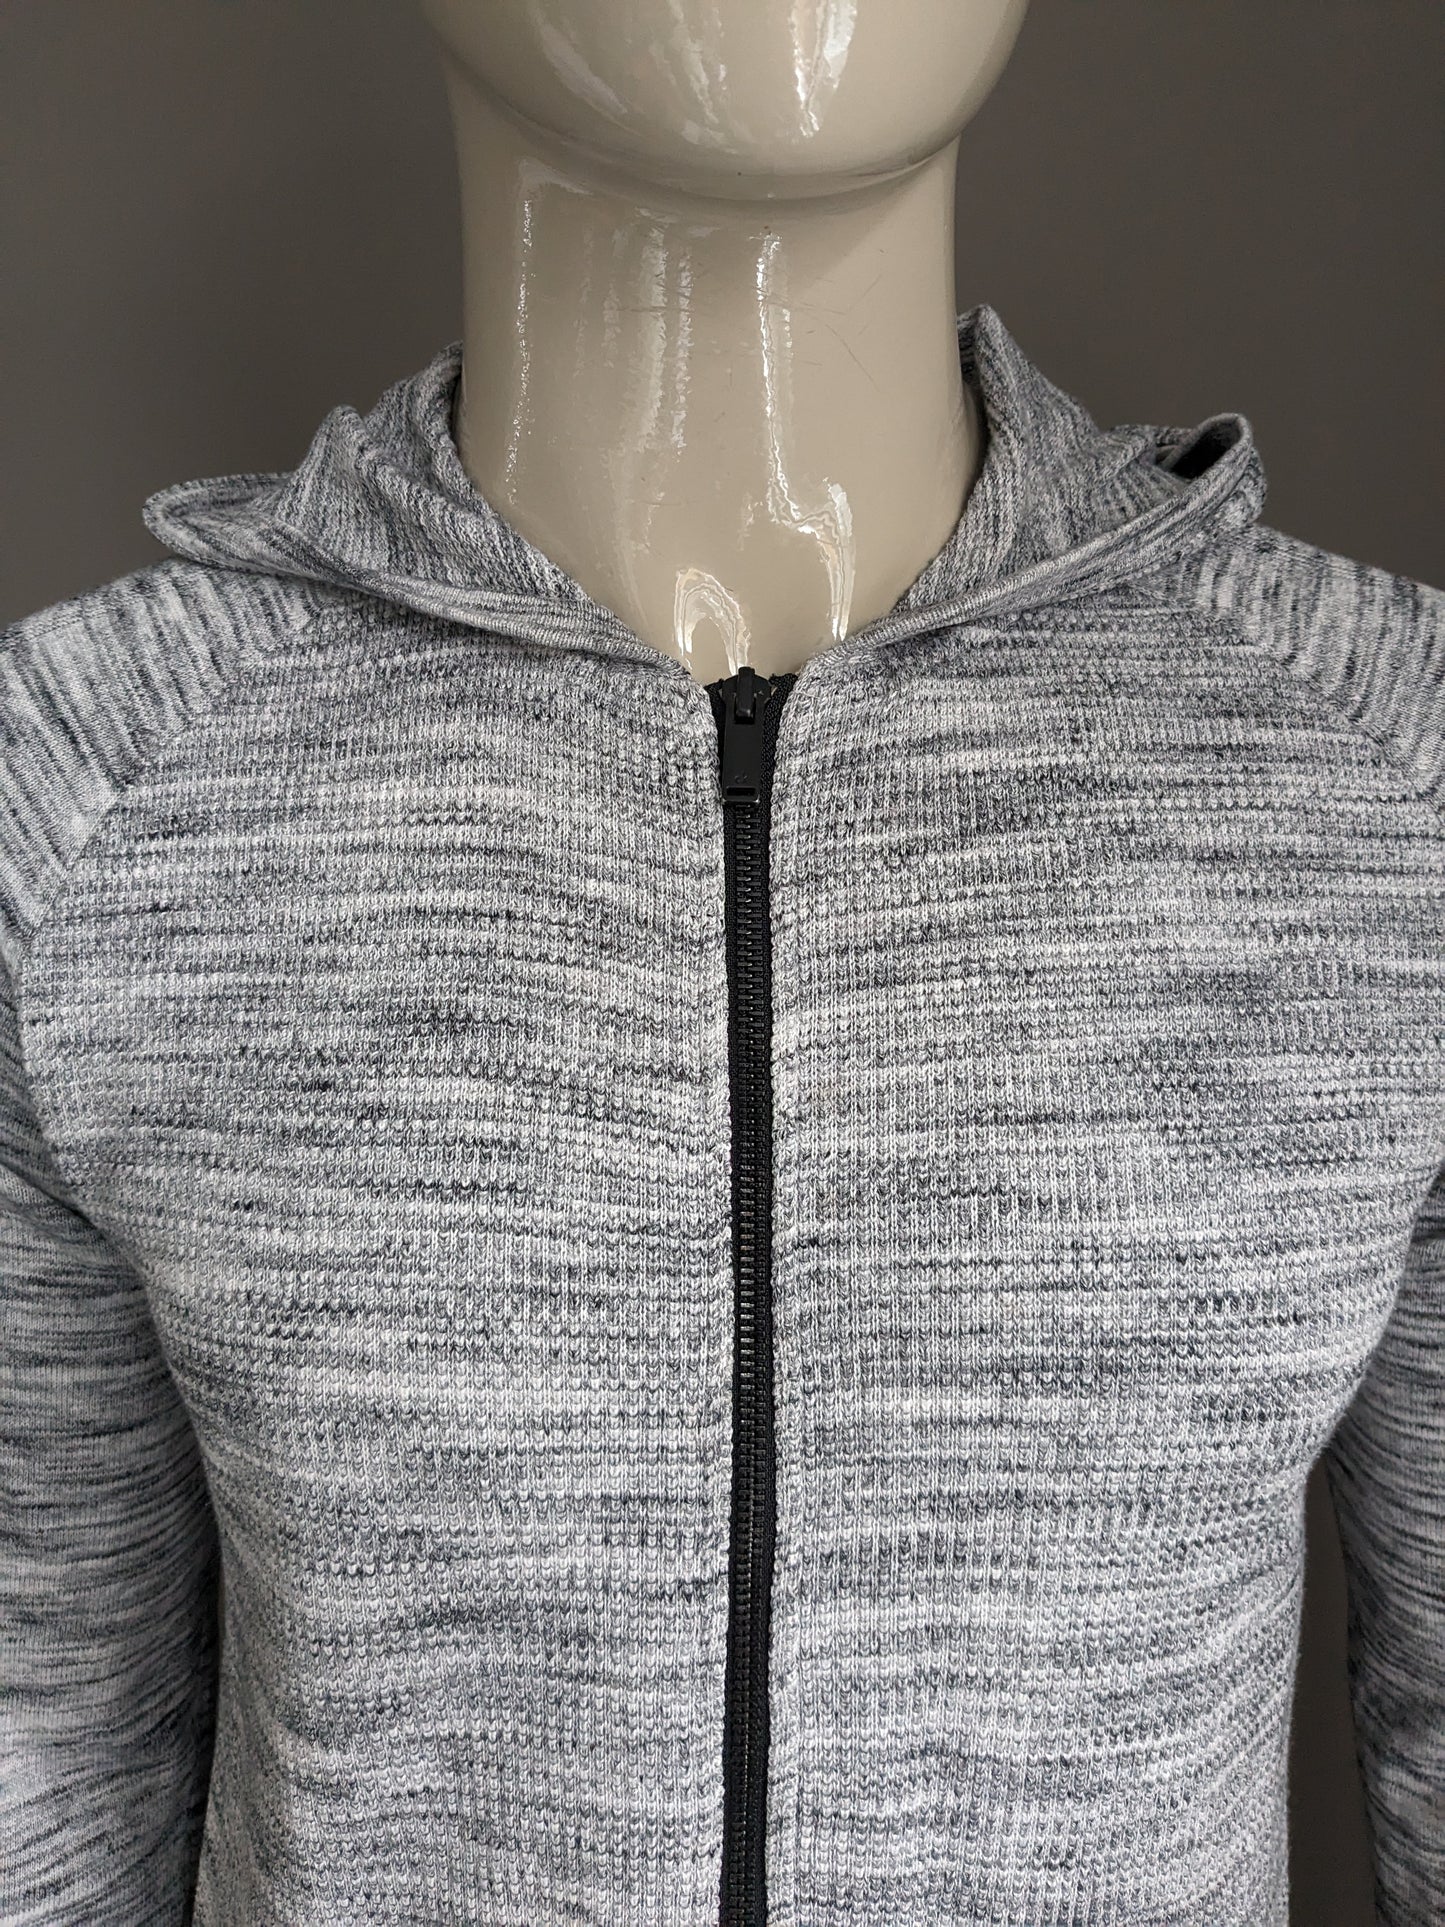 Calvin Klein vest. Gray White mixed. Size L.